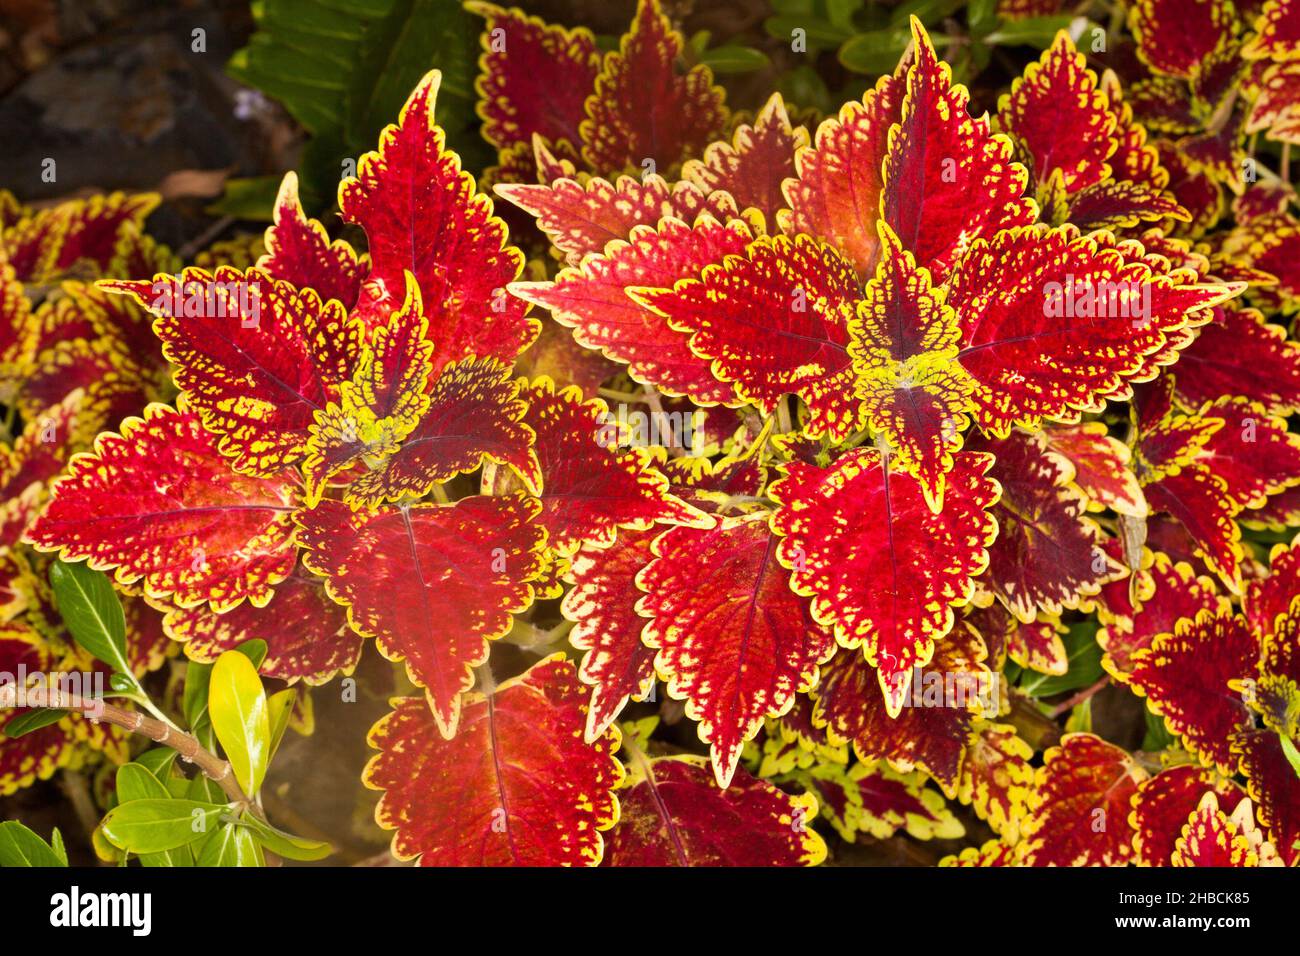 Farbenfrohe, leuchtend rote Blätter mit gelben gezackten Rändern der Sorte Coleus, Solenostemon, einer mehrjährigen Gartenpflanze, in Australien Stockfoto